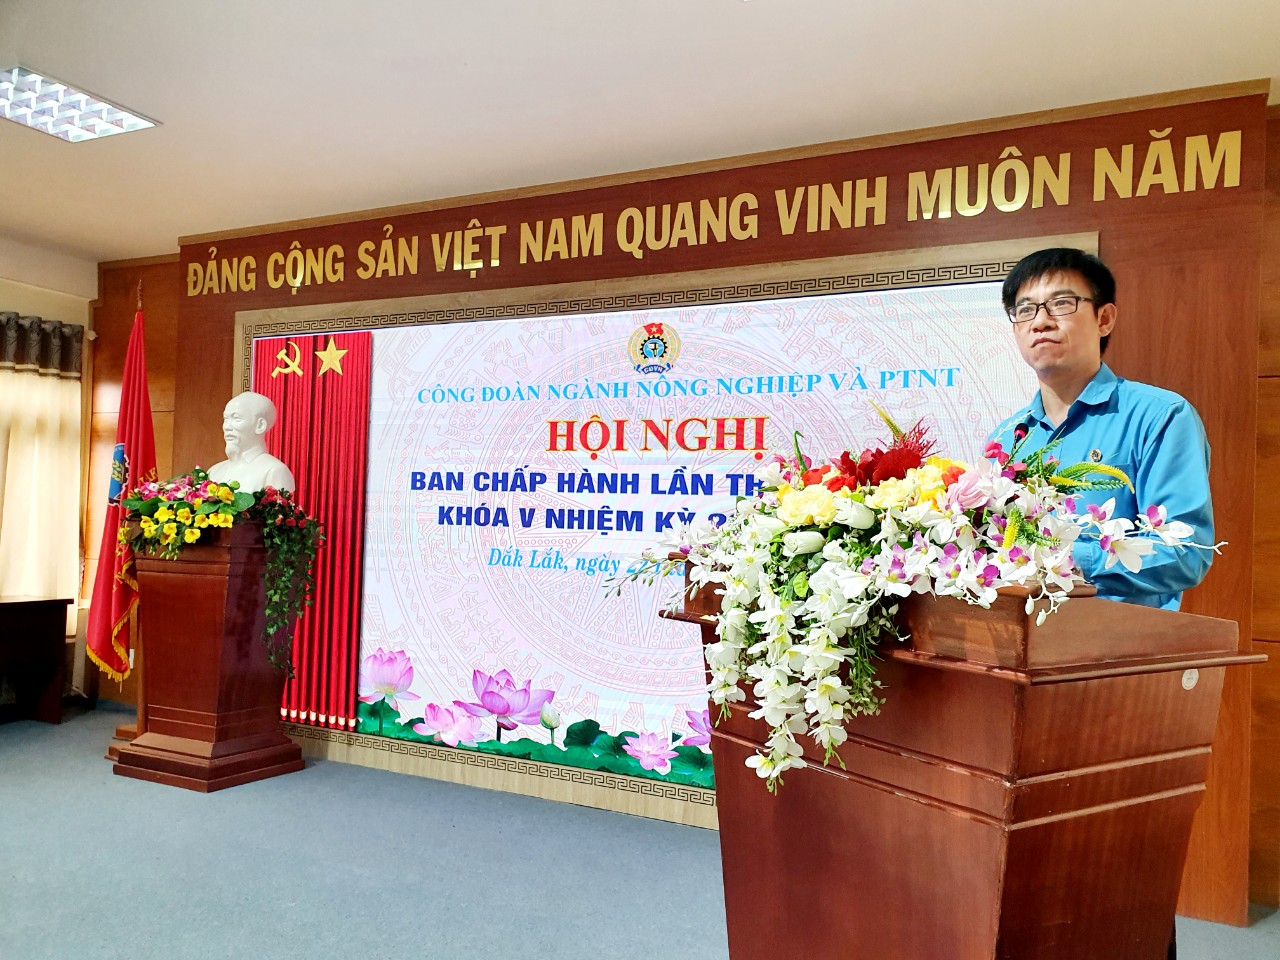 Đổi mới và nâng cao chất lượng công đoàn cơ sở ngành nông nghiệp ở Đắk Lắk